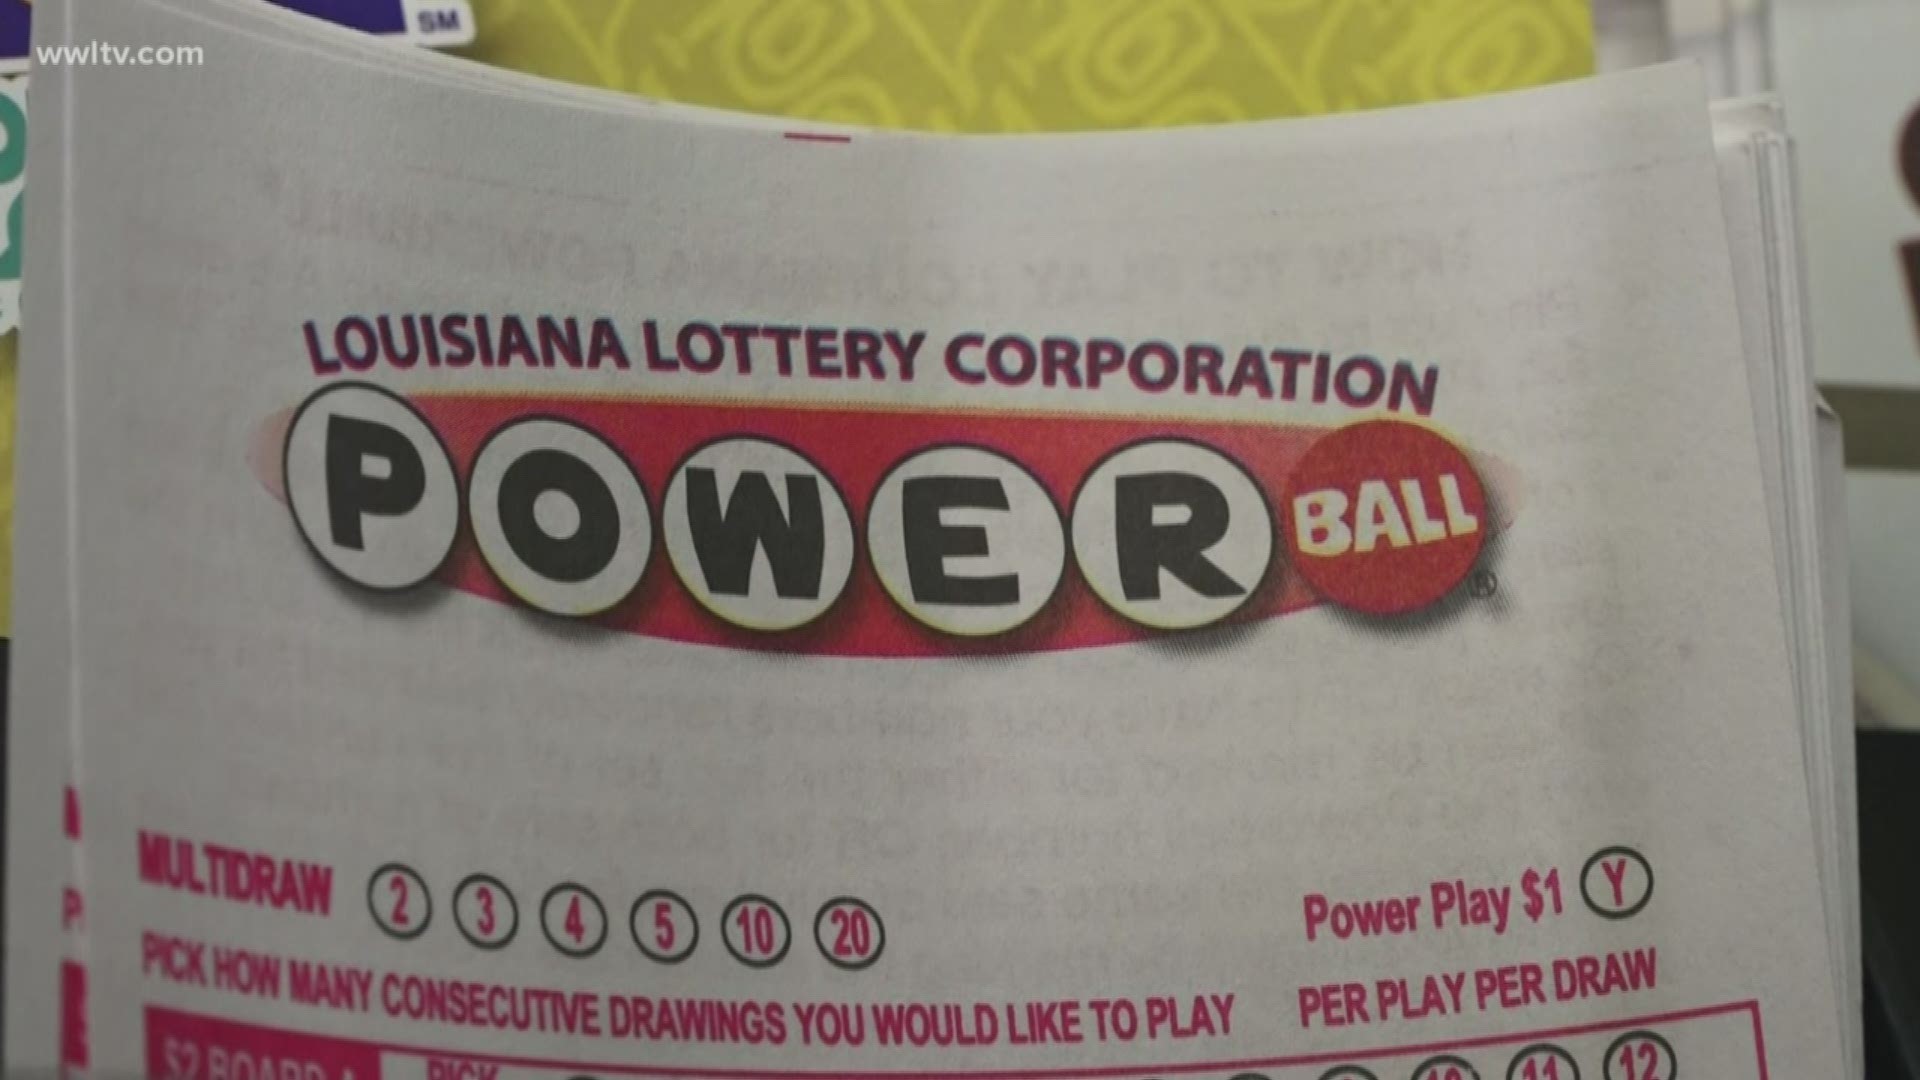 Louisiana lottery corporation jobs